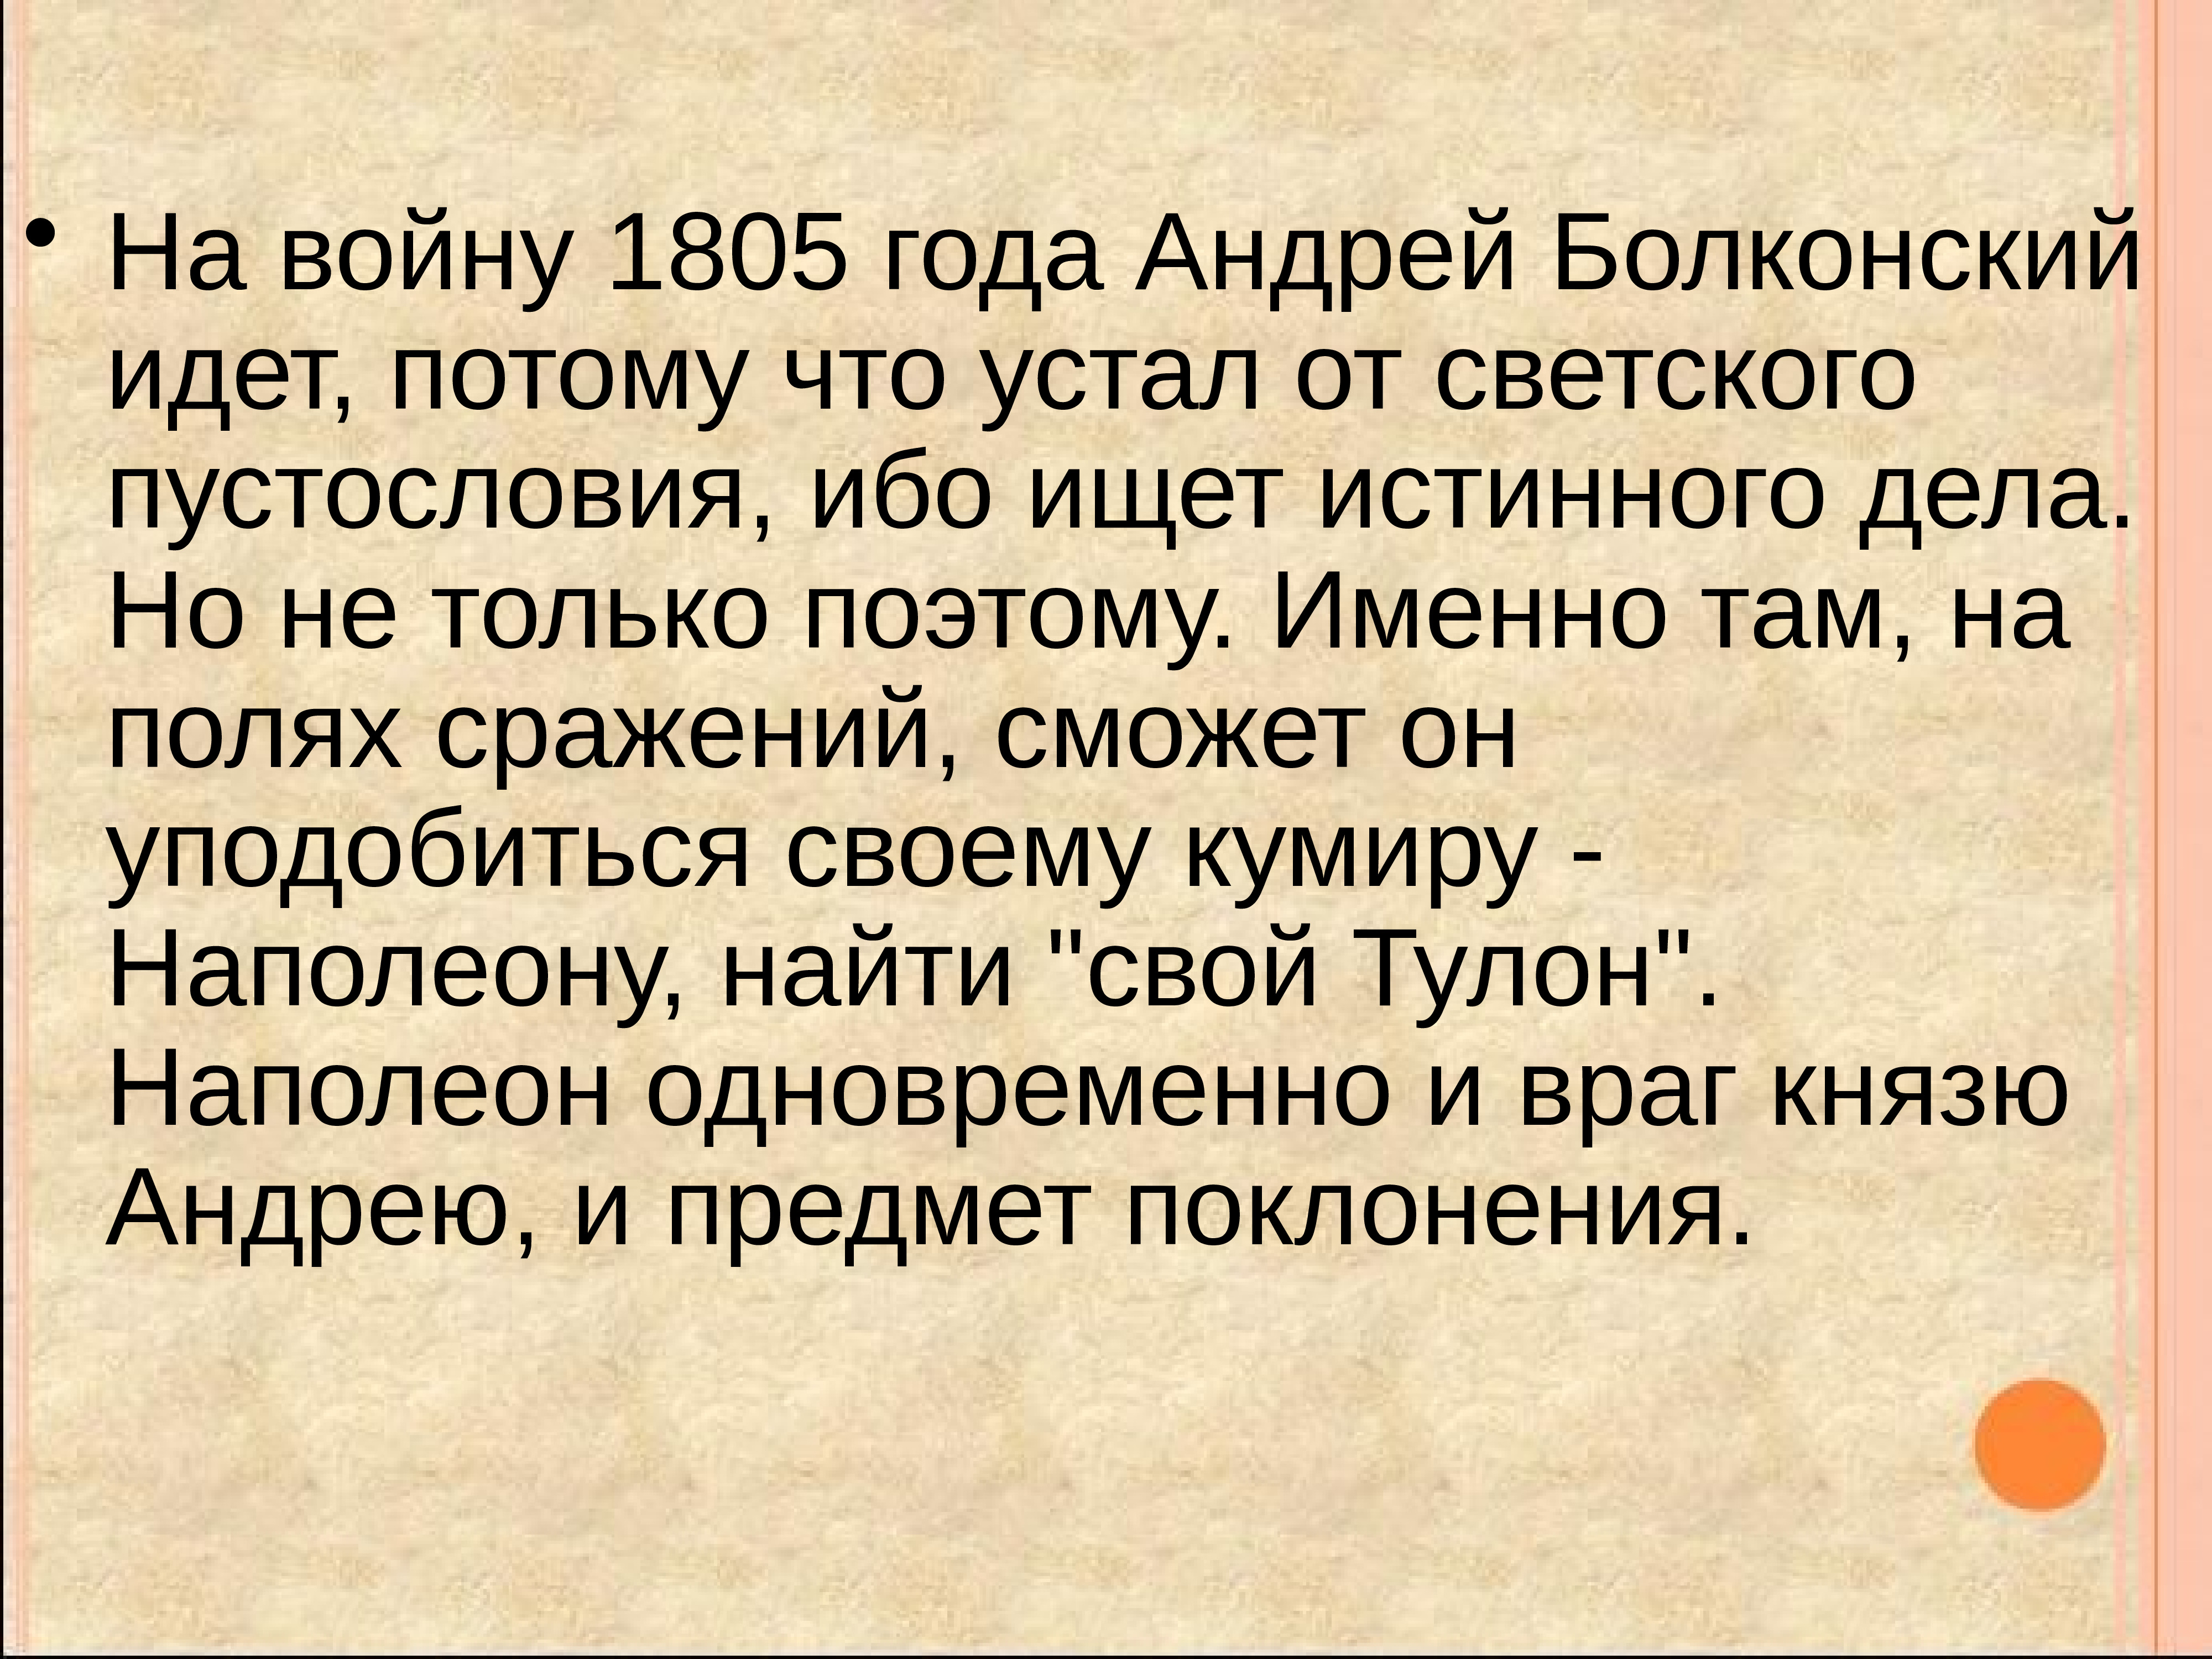 Слова андрея болконского о войне. Причины отъезда на войну 1805 года.